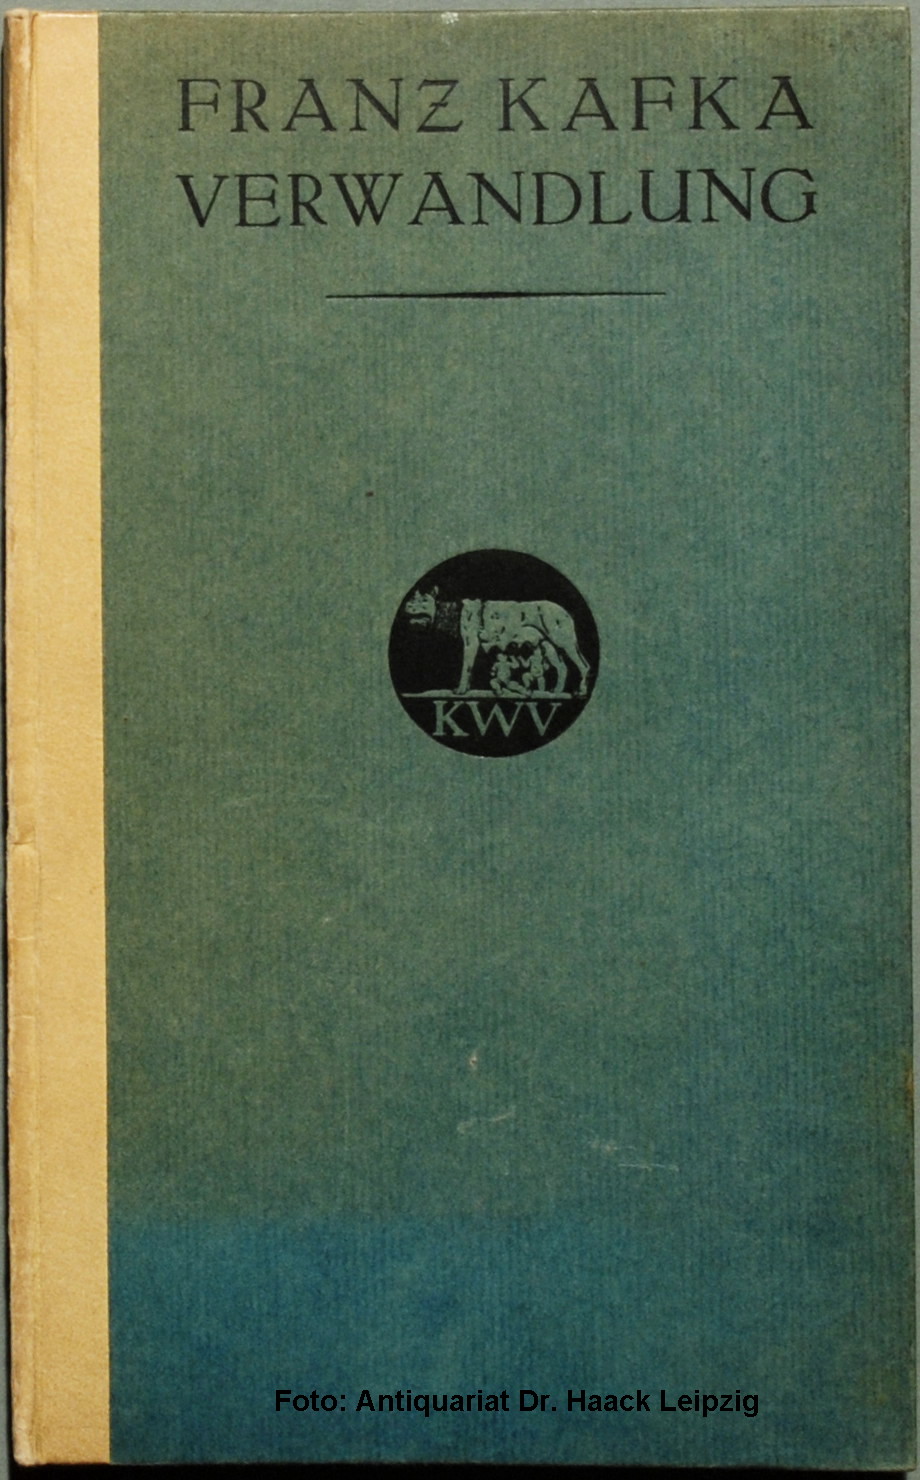 Franz Kafka: Die Verwandlung (German language, 1915, Kurt Wolff Verlag)